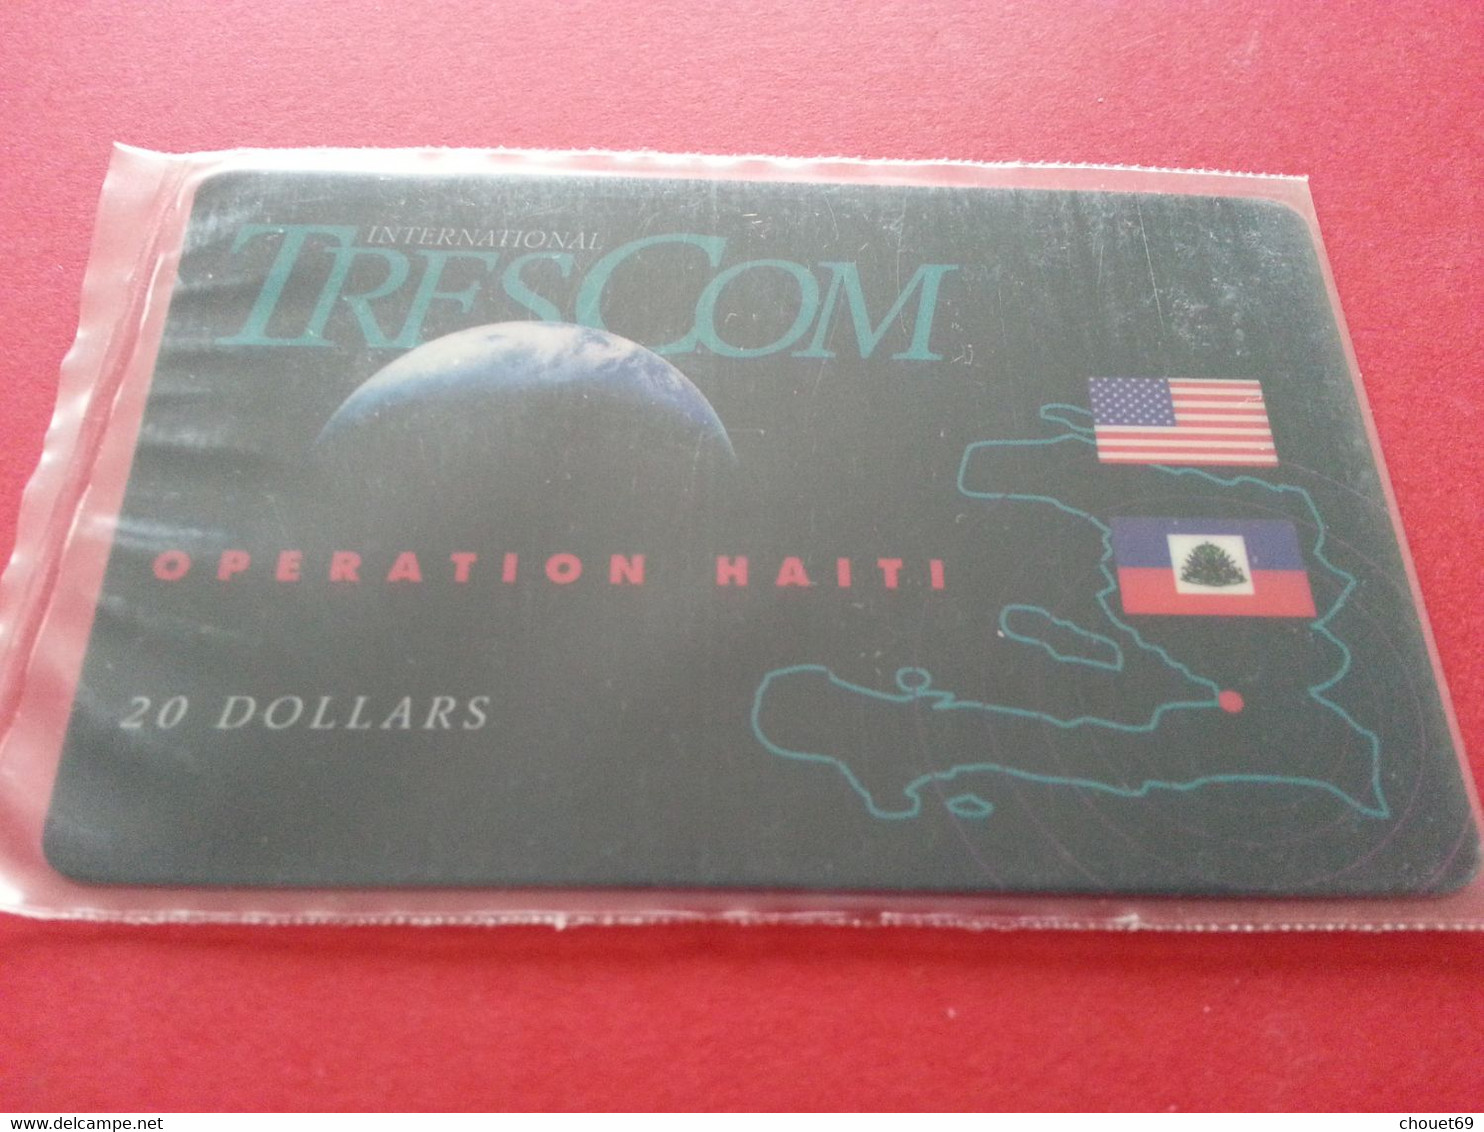 HAITI - HAI PA2 TRESCOM Blister OPERATION HAITI 20 USD Dollars MINT NSB 4/97 Army Militaria (TH0320 - Haití